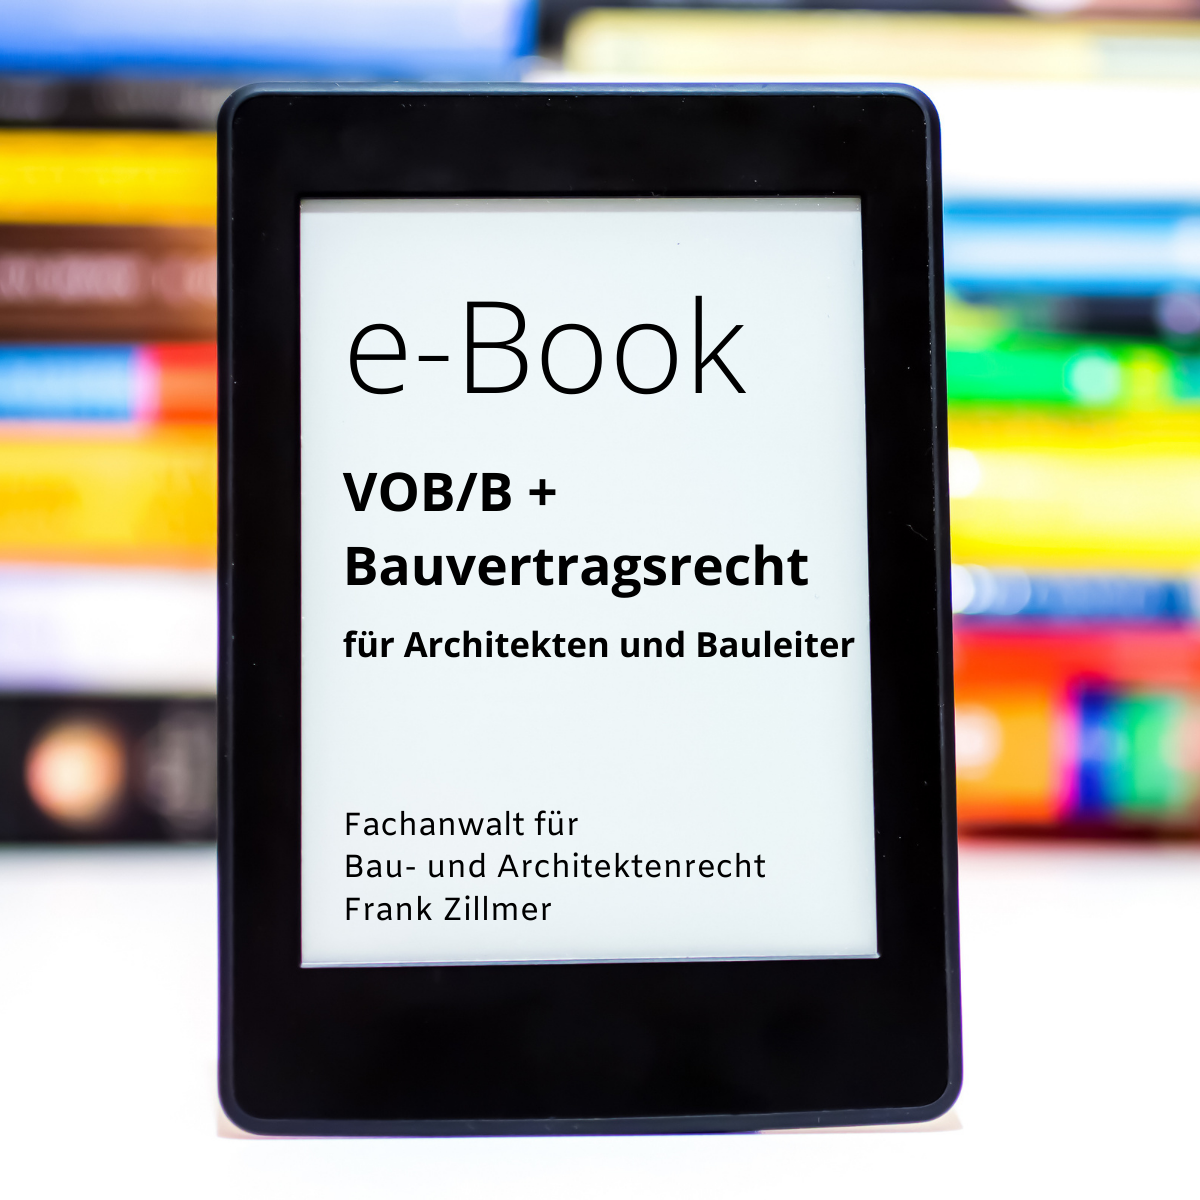 VOB/B Bauvertragsrecht Architekten Bauleiter eBook